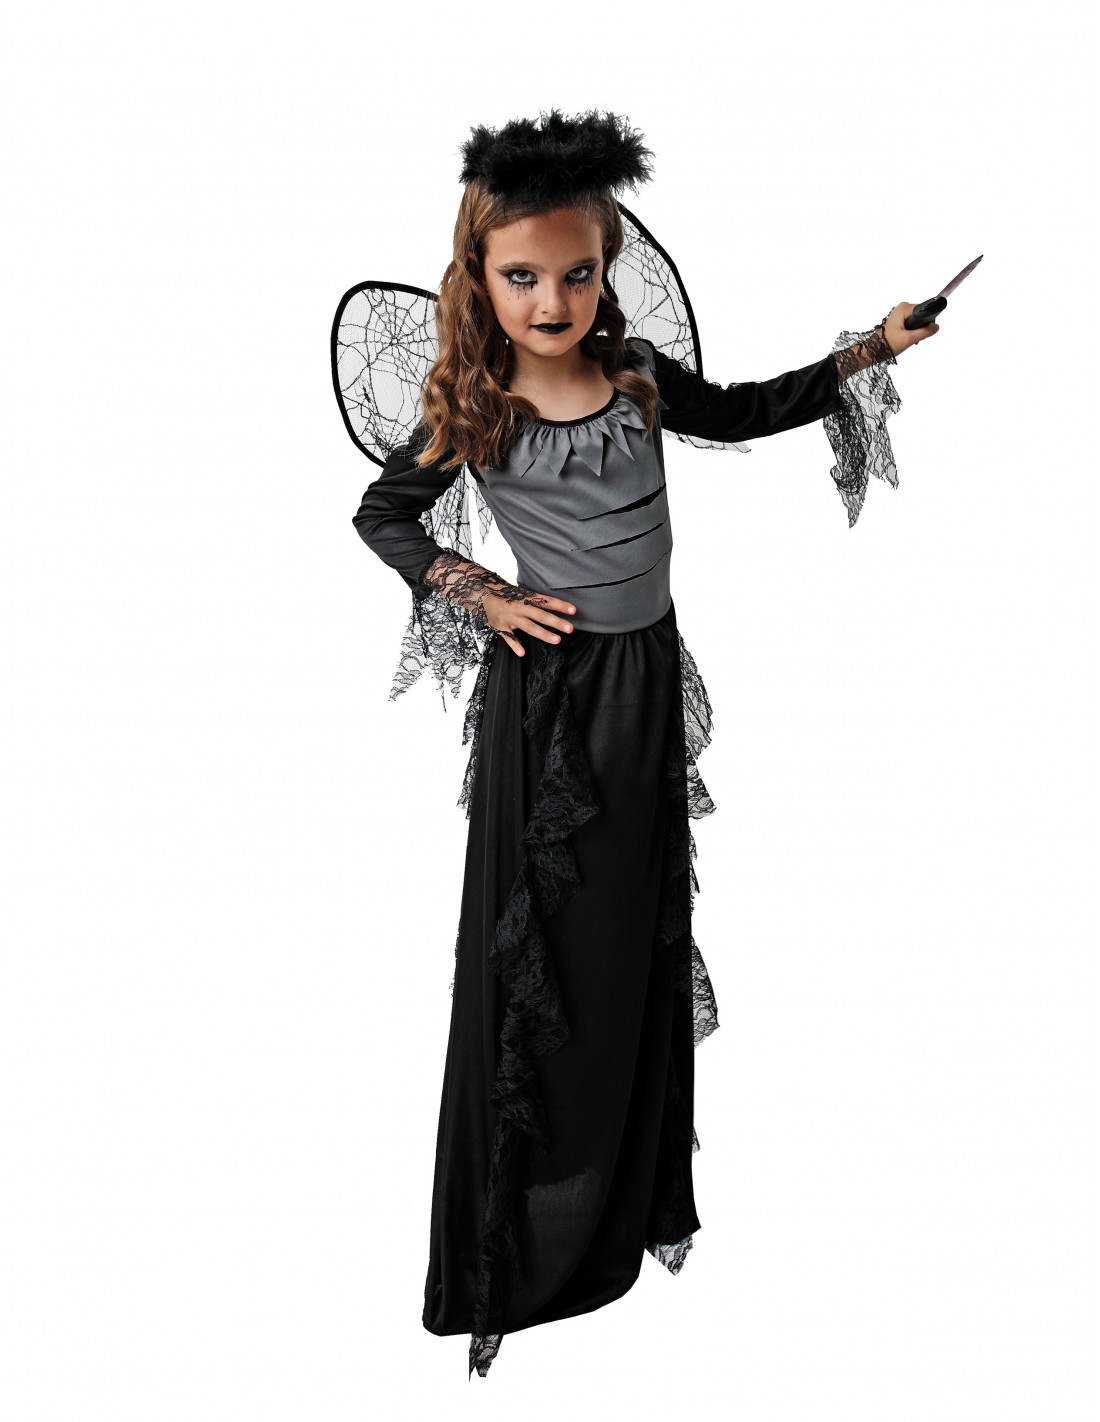 Ordenador portátil Triturado Circulo Disfraz de Ángel caído para niñas tallas a elegir colección halloween niñ@s